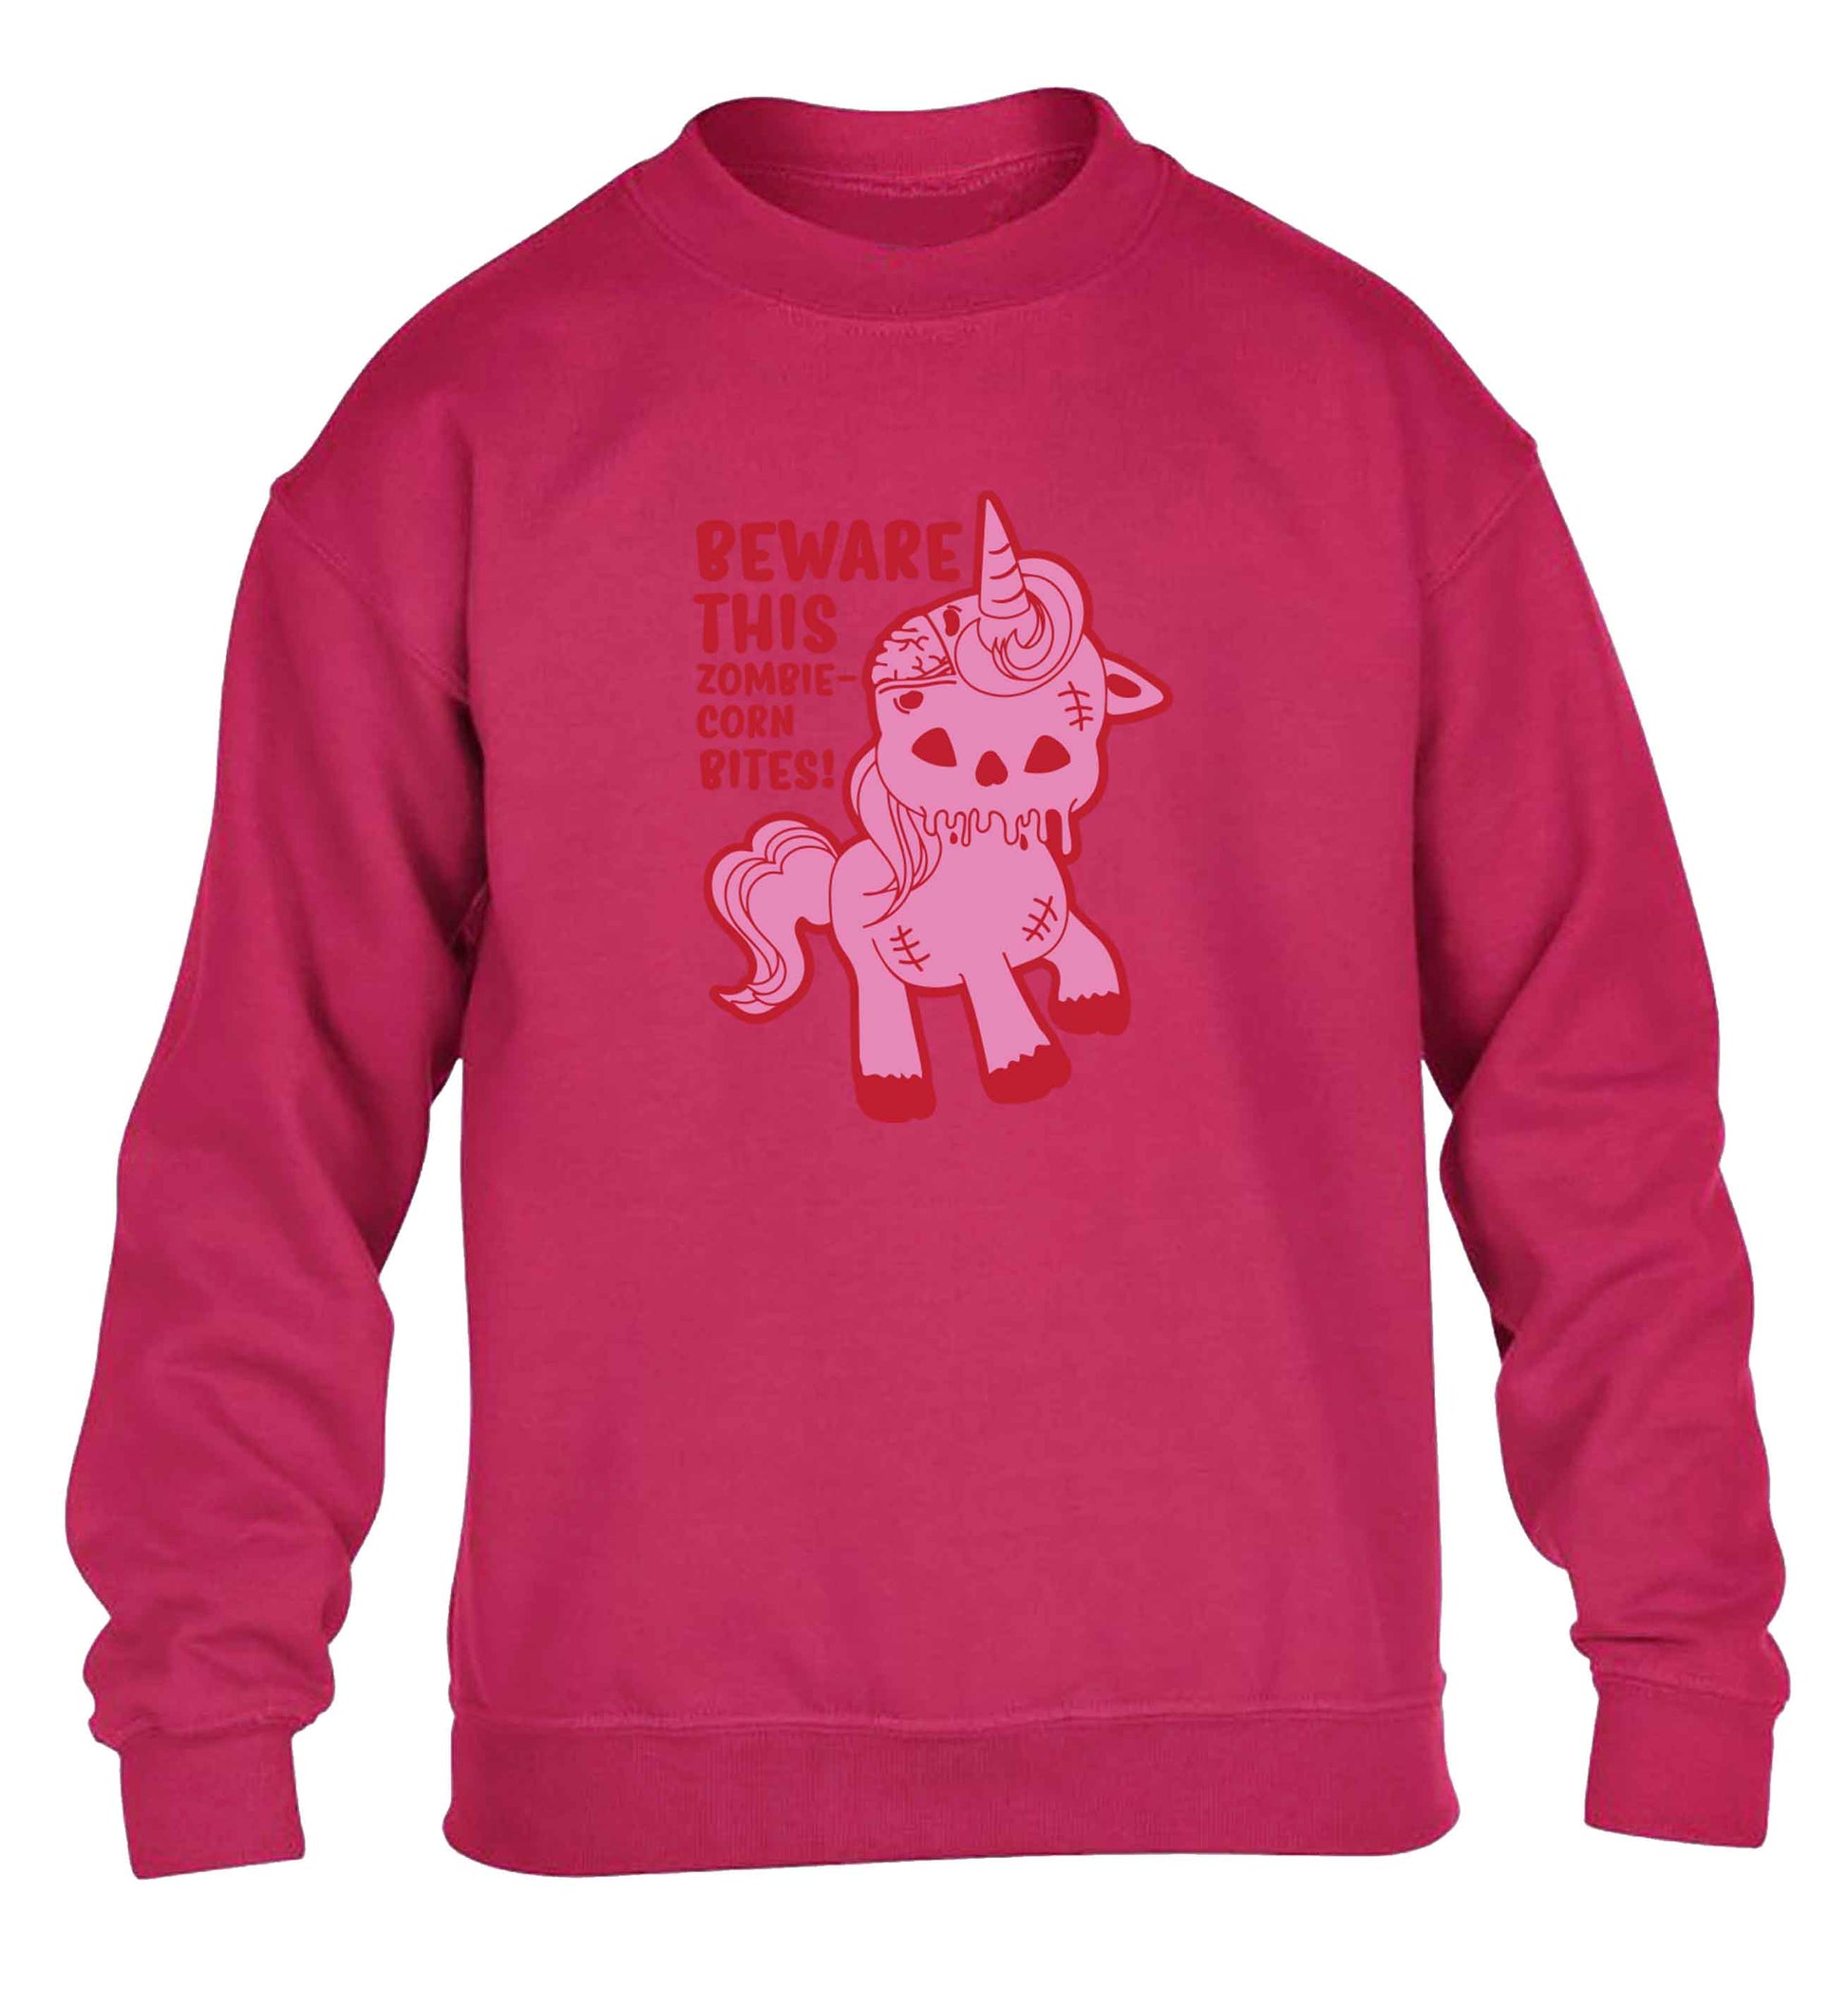 Beware this zombiecorn bites children's pink sweater 12-13 Years